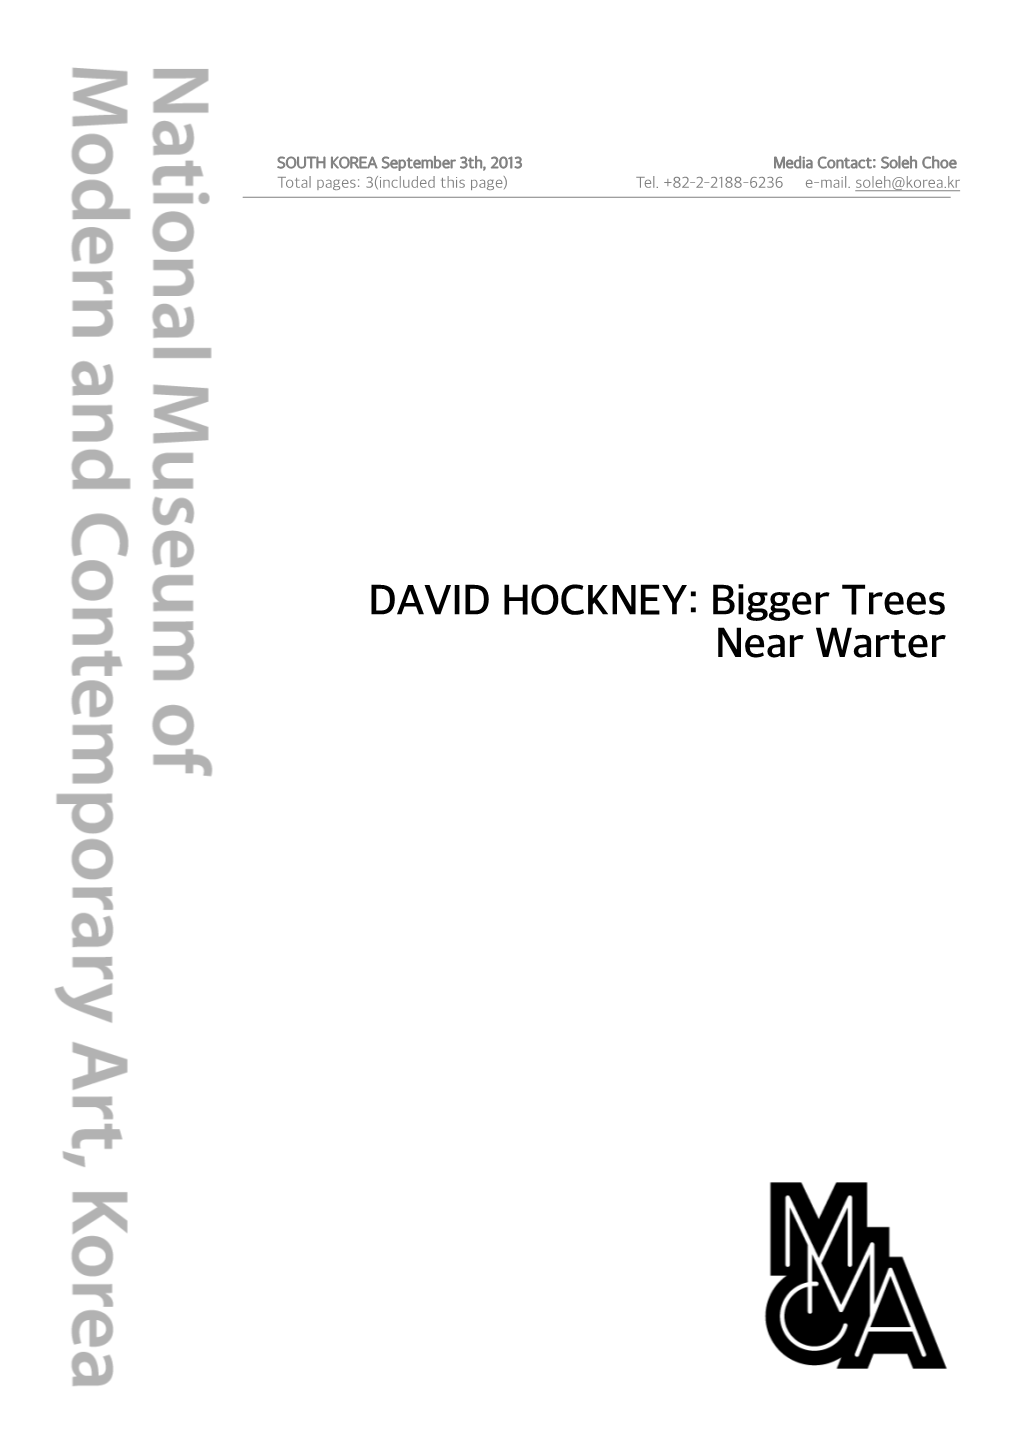 DAVID HOCKNEY: Bigger Trees Near Warter